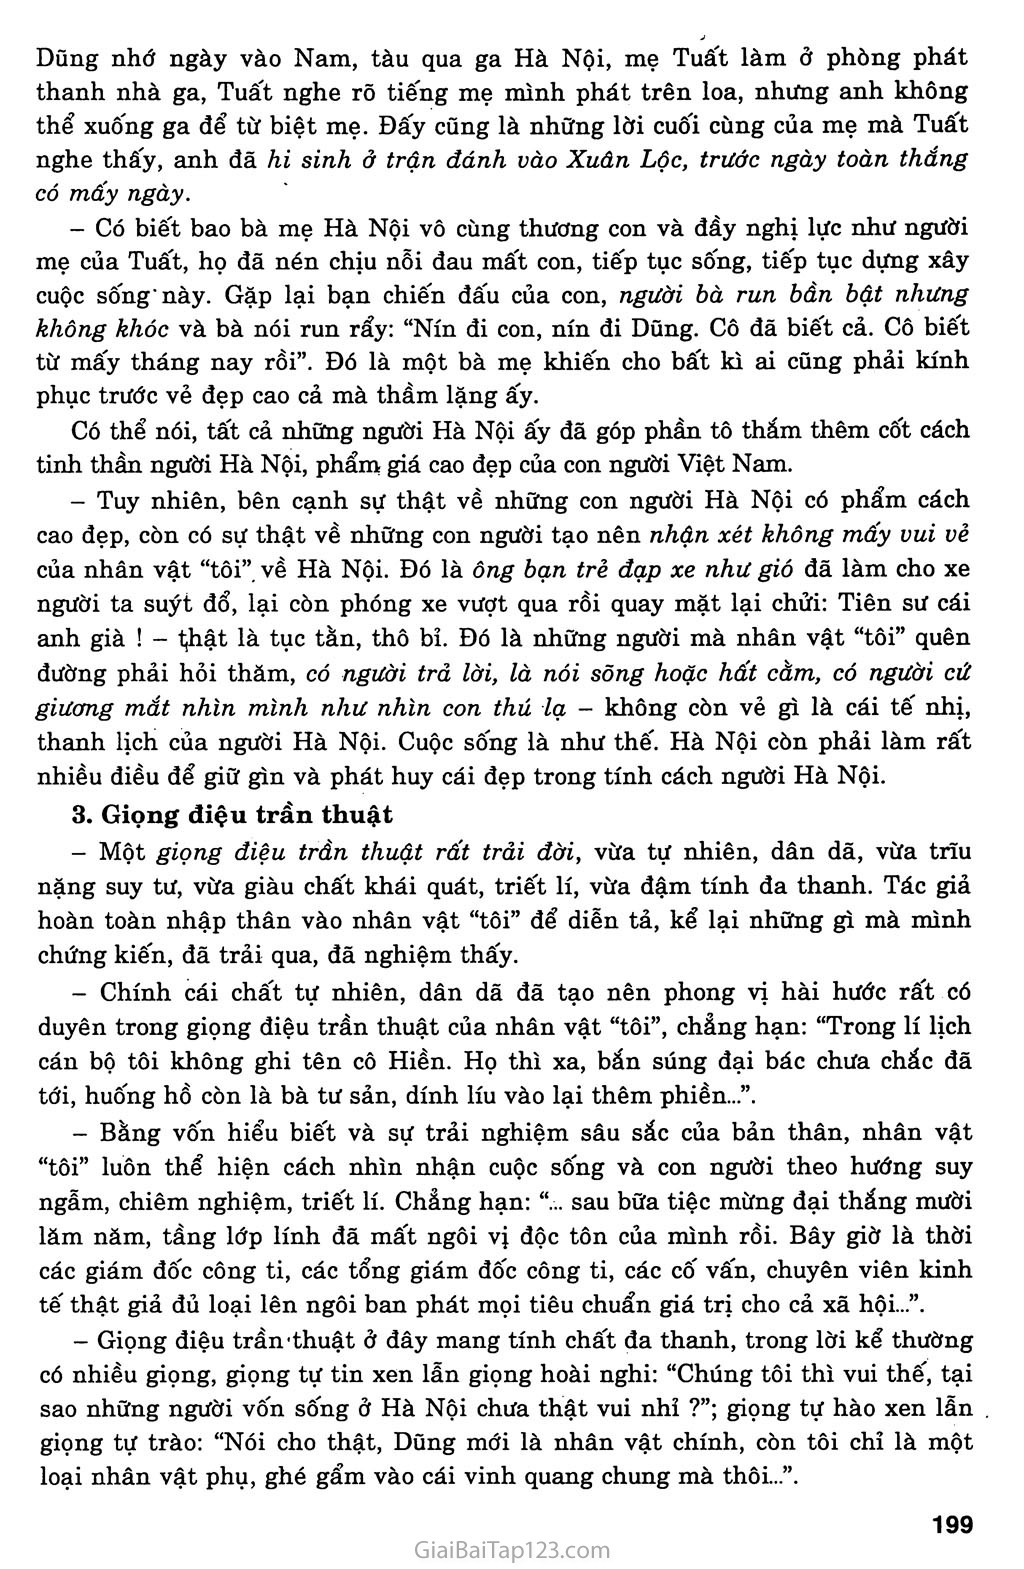 Một người Hà Nội (Nguyễn Khải, 1990) trang 4